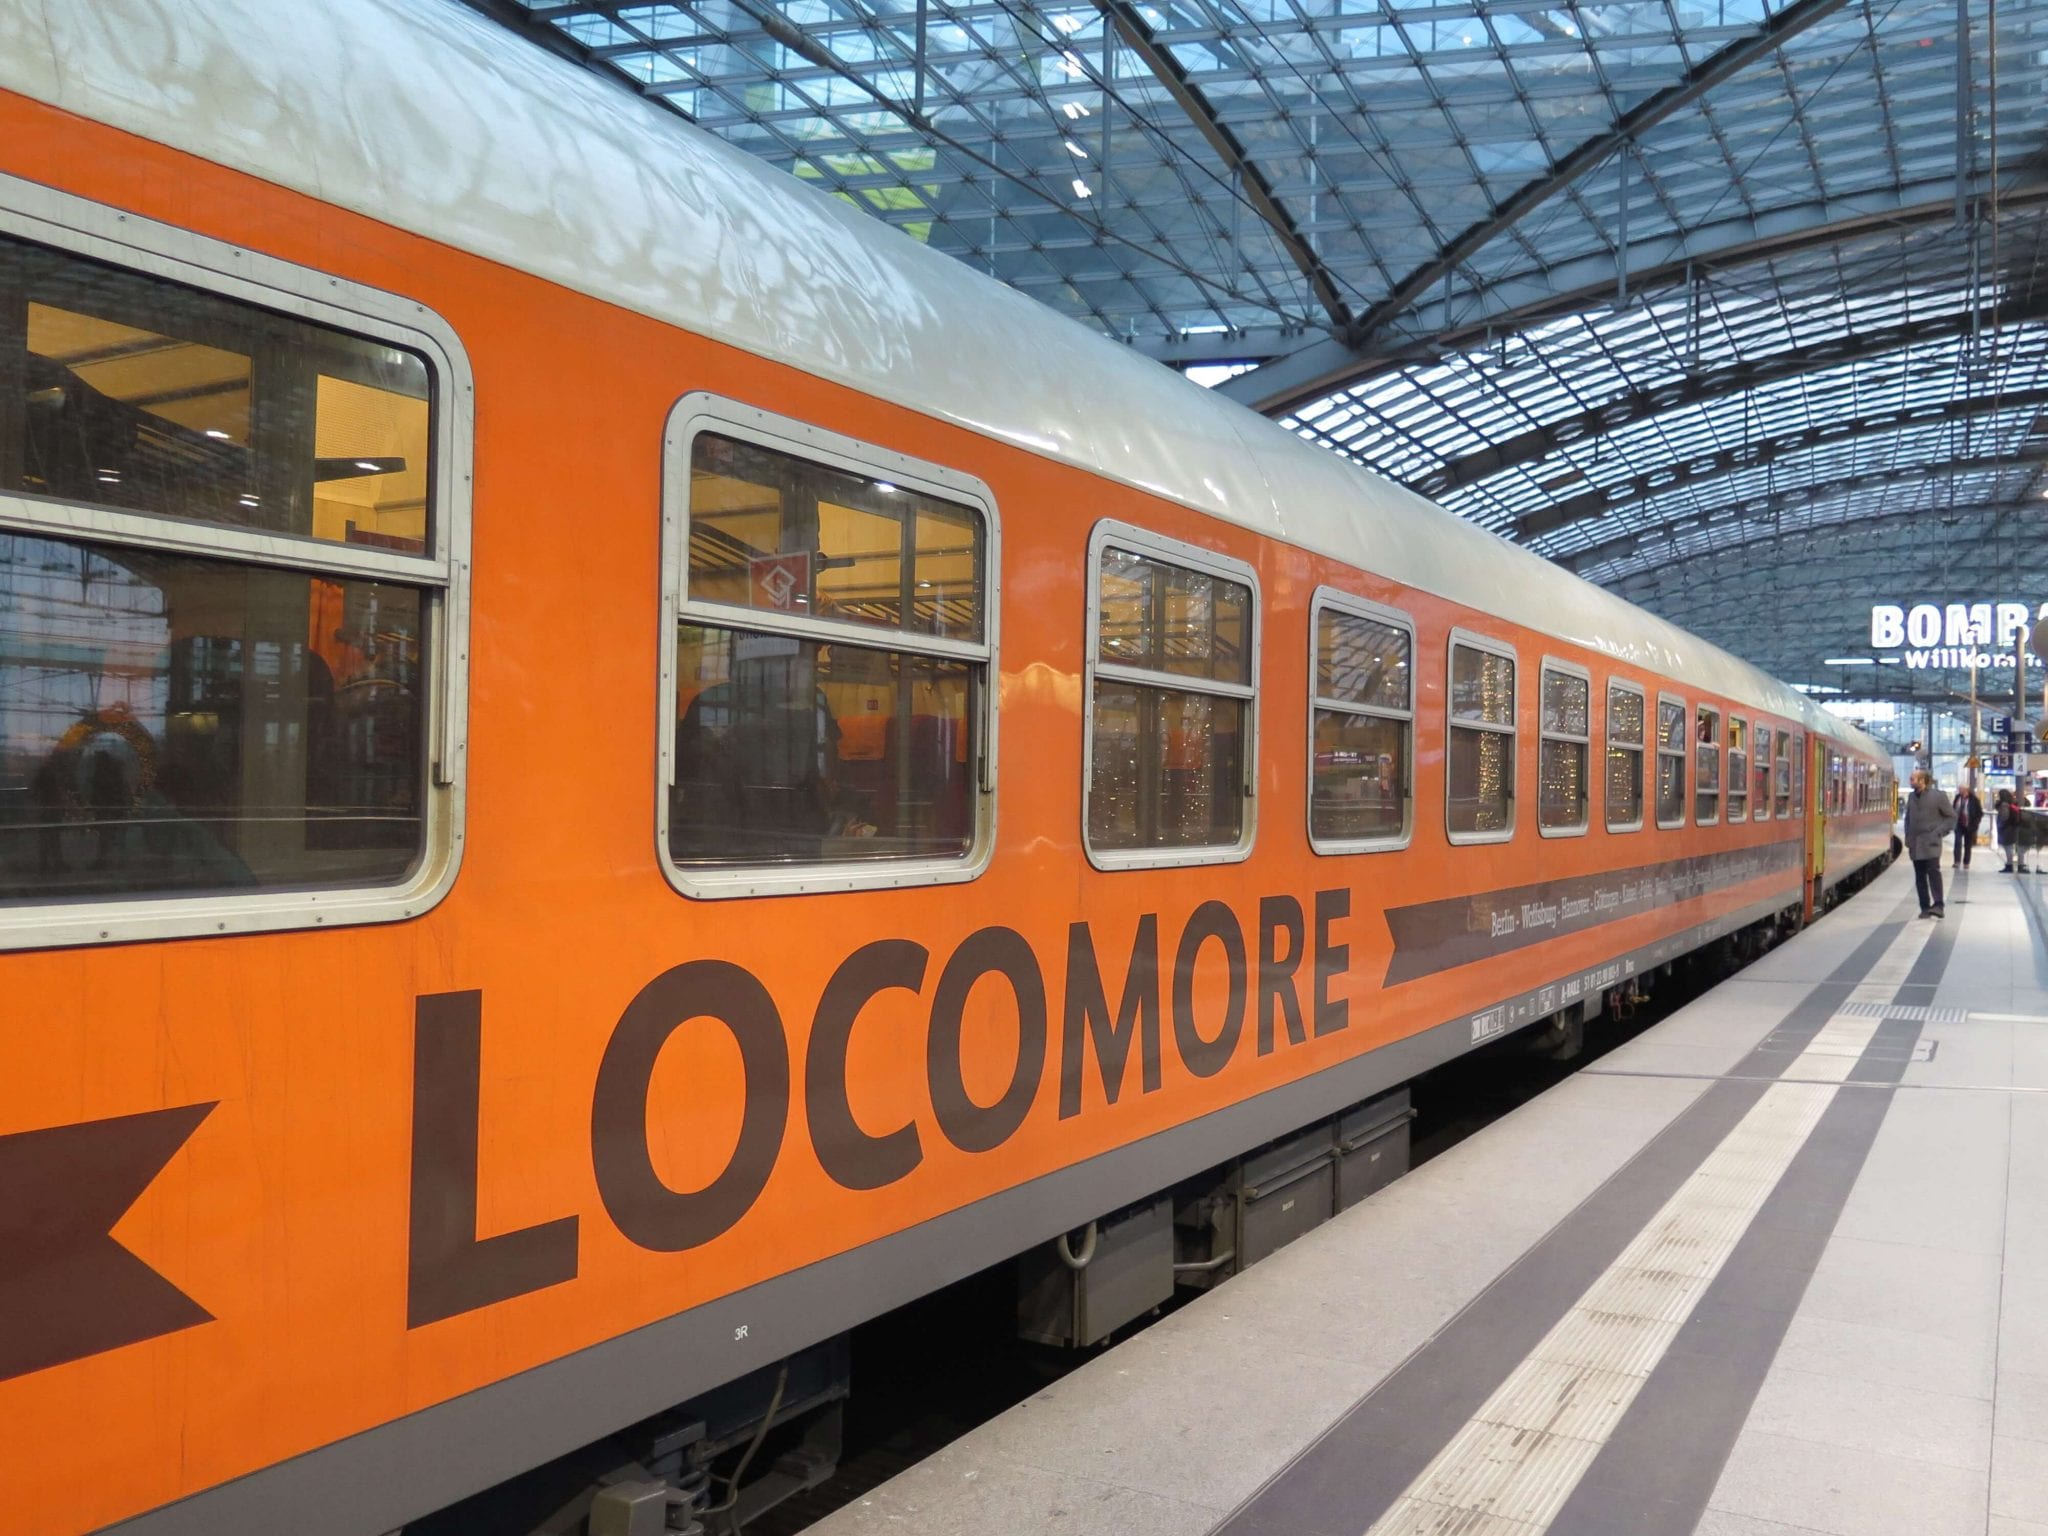 Bahn frei für Locomore: der orange Zug ist am Berliner Hauptbahnhof ein echter Hingucker © NATURSTROM AG